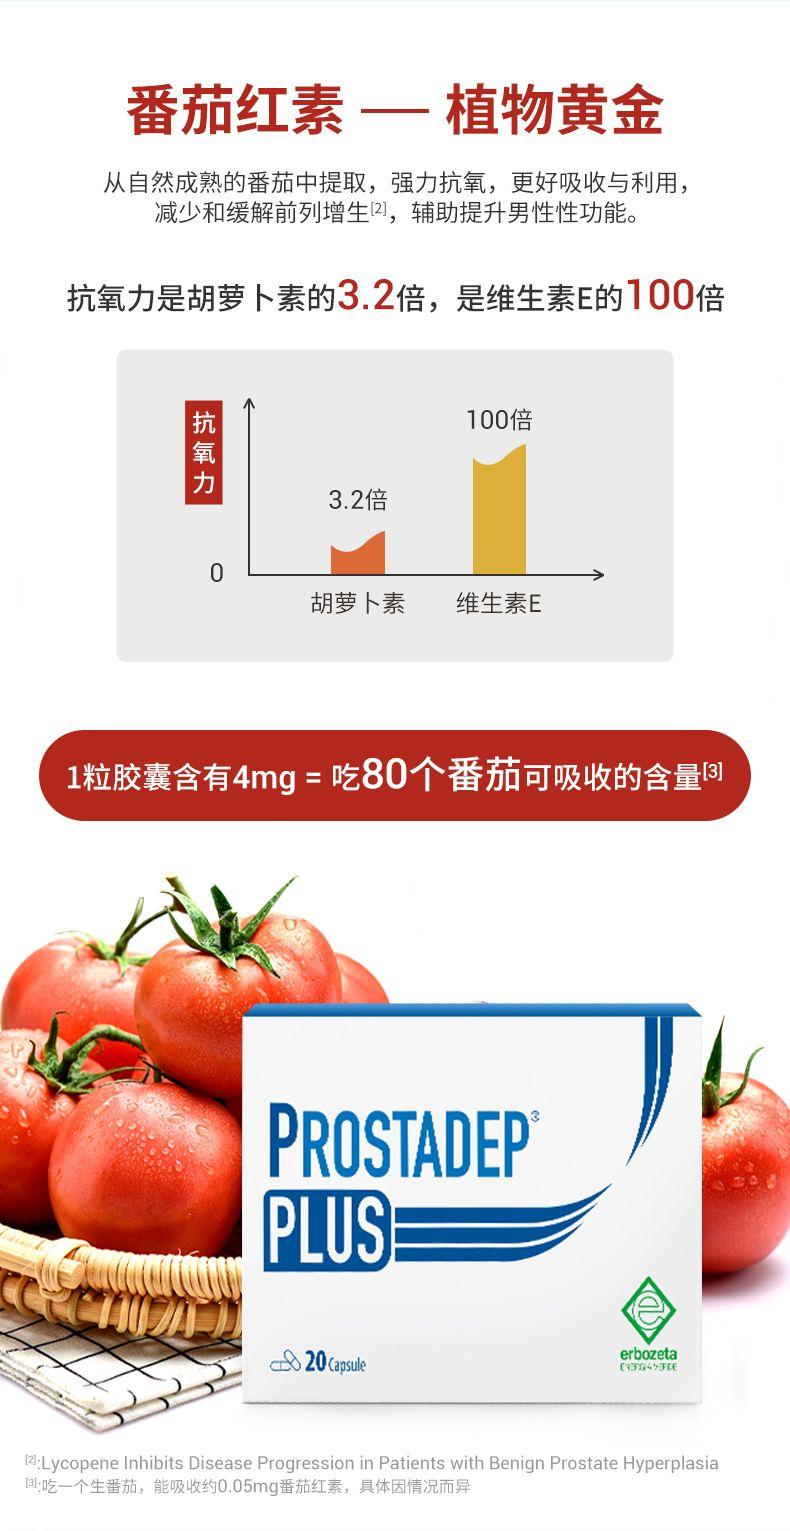 番茄红素一 一植物黄金 从自然成熟的番茄中提取,强力抗氧,更好吸收与利用, 减少和缓解前列增生2],辅助提升男性性功能。 抗氧力是胡萝卜素的3.2倍,是维生素E的100倍 抗氧力 100倍 3.2倍 0 胡萝卜素 维生素E 1粒胶囊含有4mg=吃80个番茄可吸收的含量B PROSTA DEP PLUS 20aosue erb o zeta EG49FE :Lycopene Inhibits Disease Progression in Patients with Benign Prostate Hyperplasia 日:吃一个生番茄,能吸收约0.05mg番茄红素,具体因情况而异 